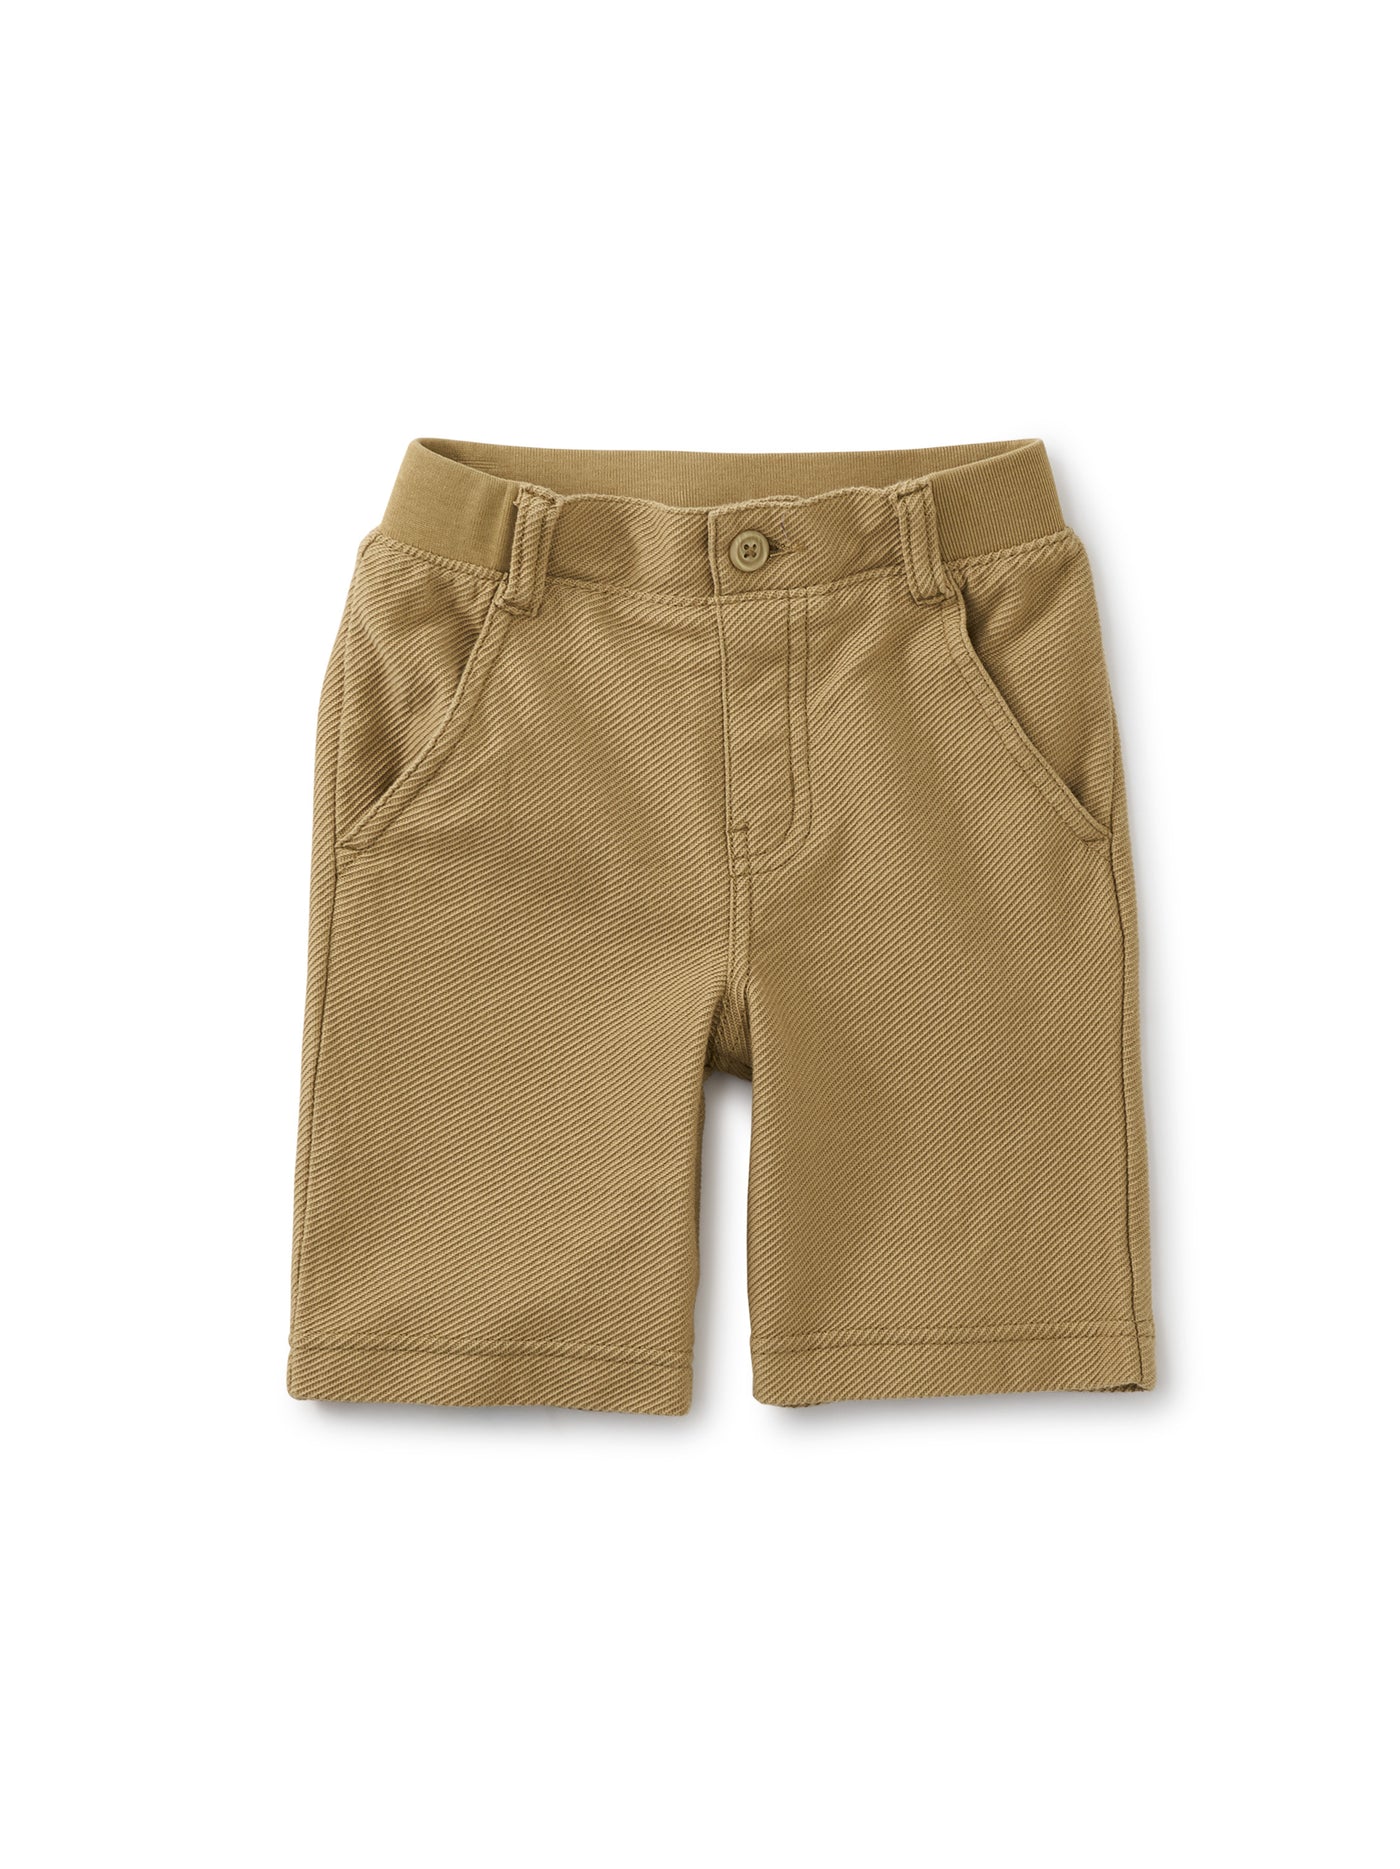 Sandstone Boys Shorts